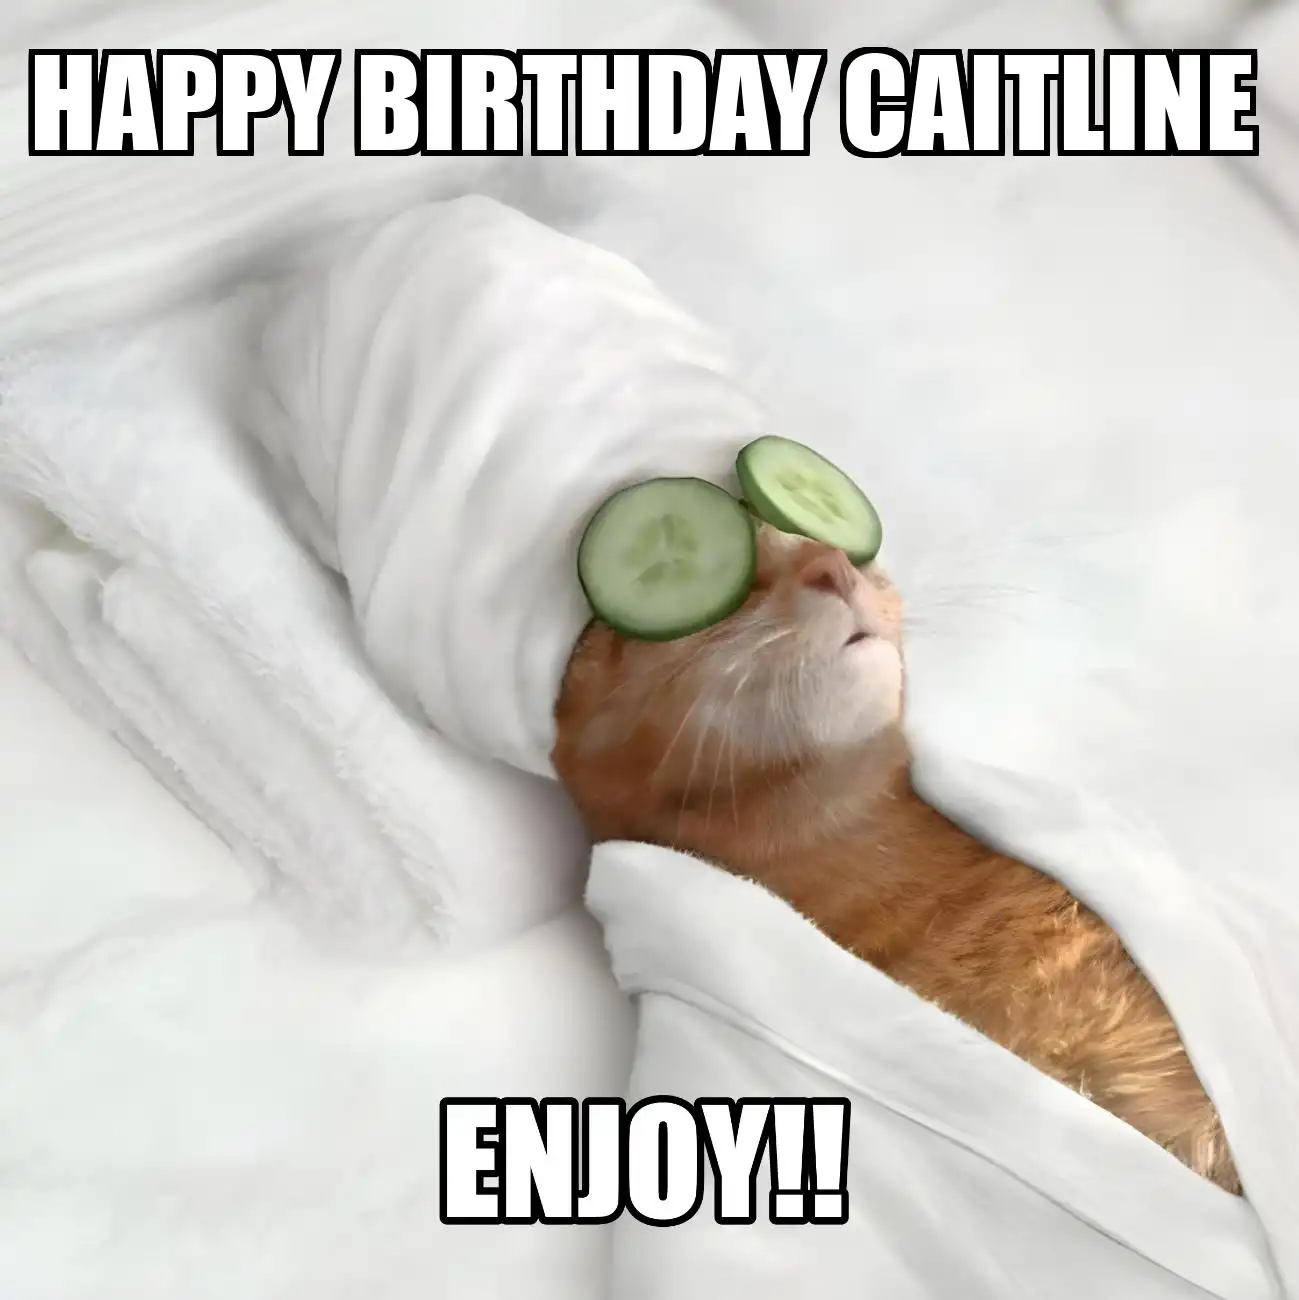 Happy Birthday Caitline Enjoy Cat Meme